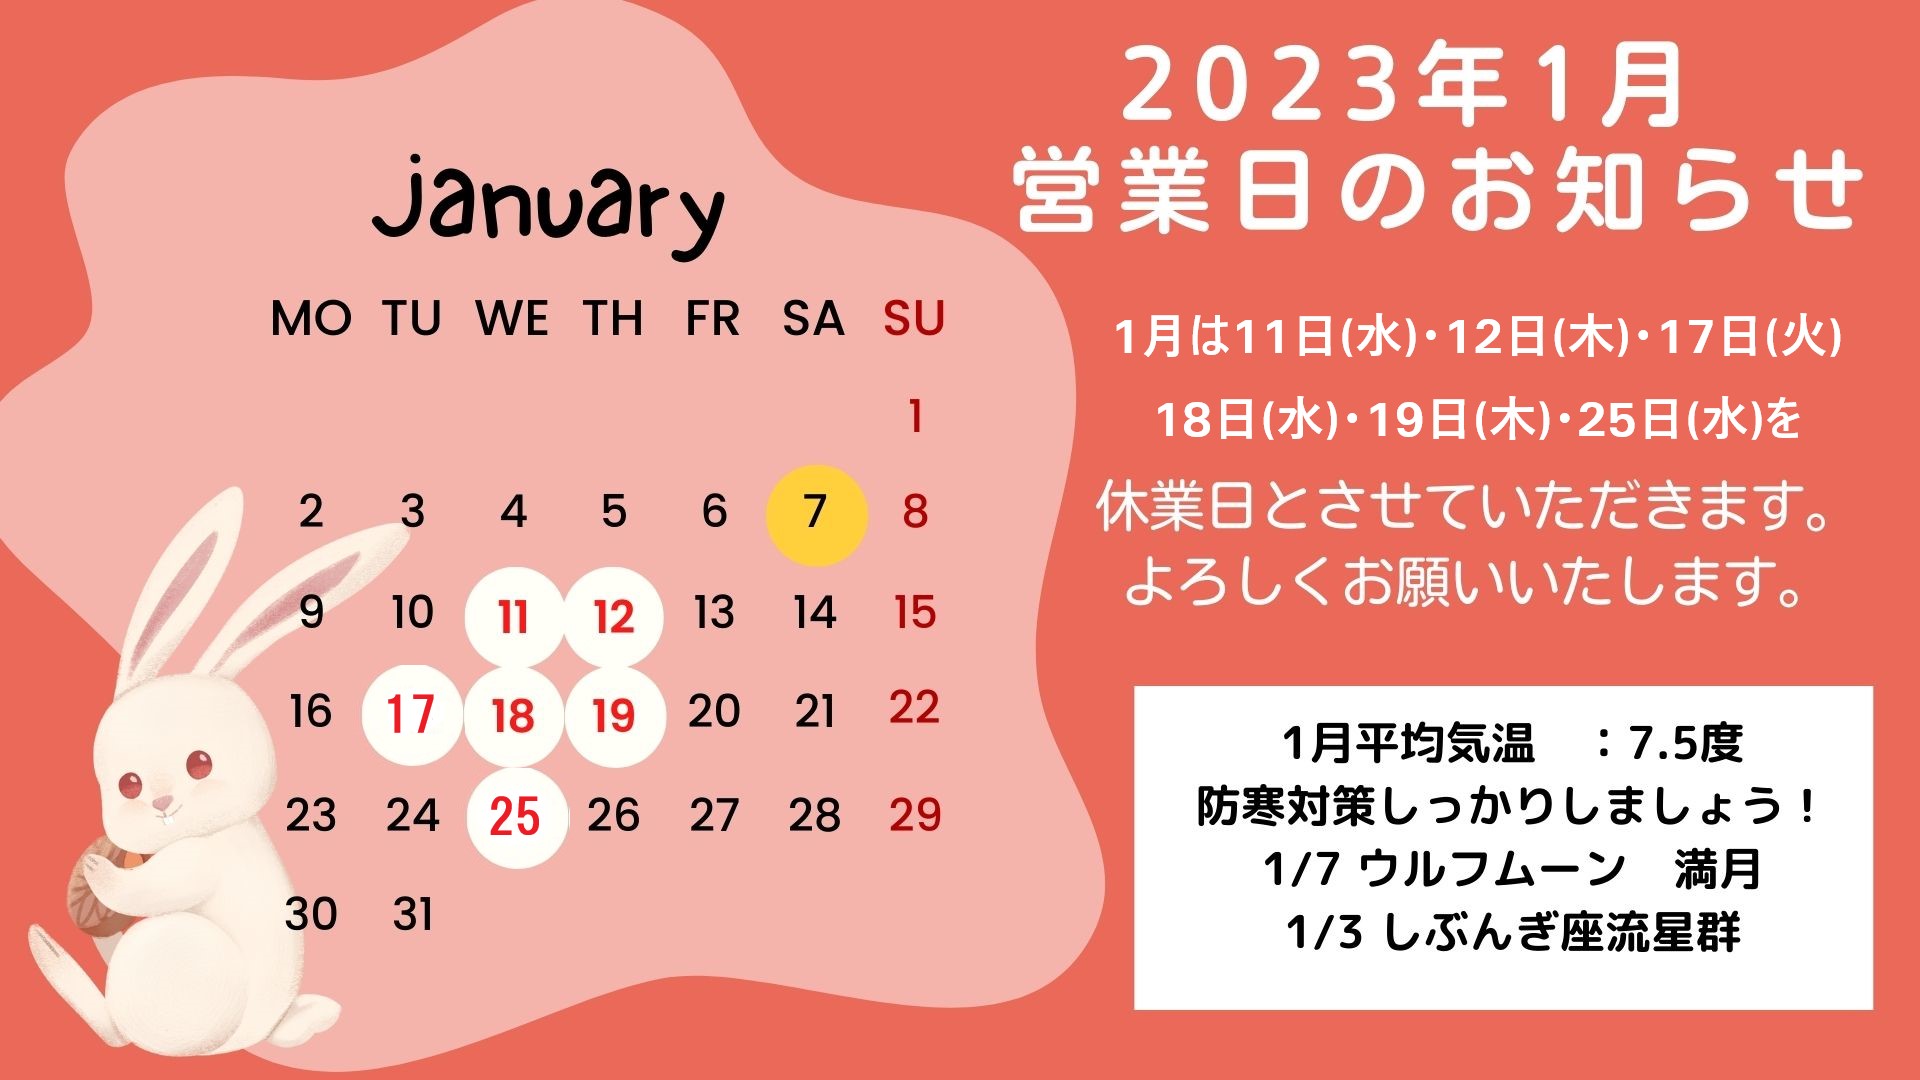 【更新】2023年1月の営業日のお知らせ